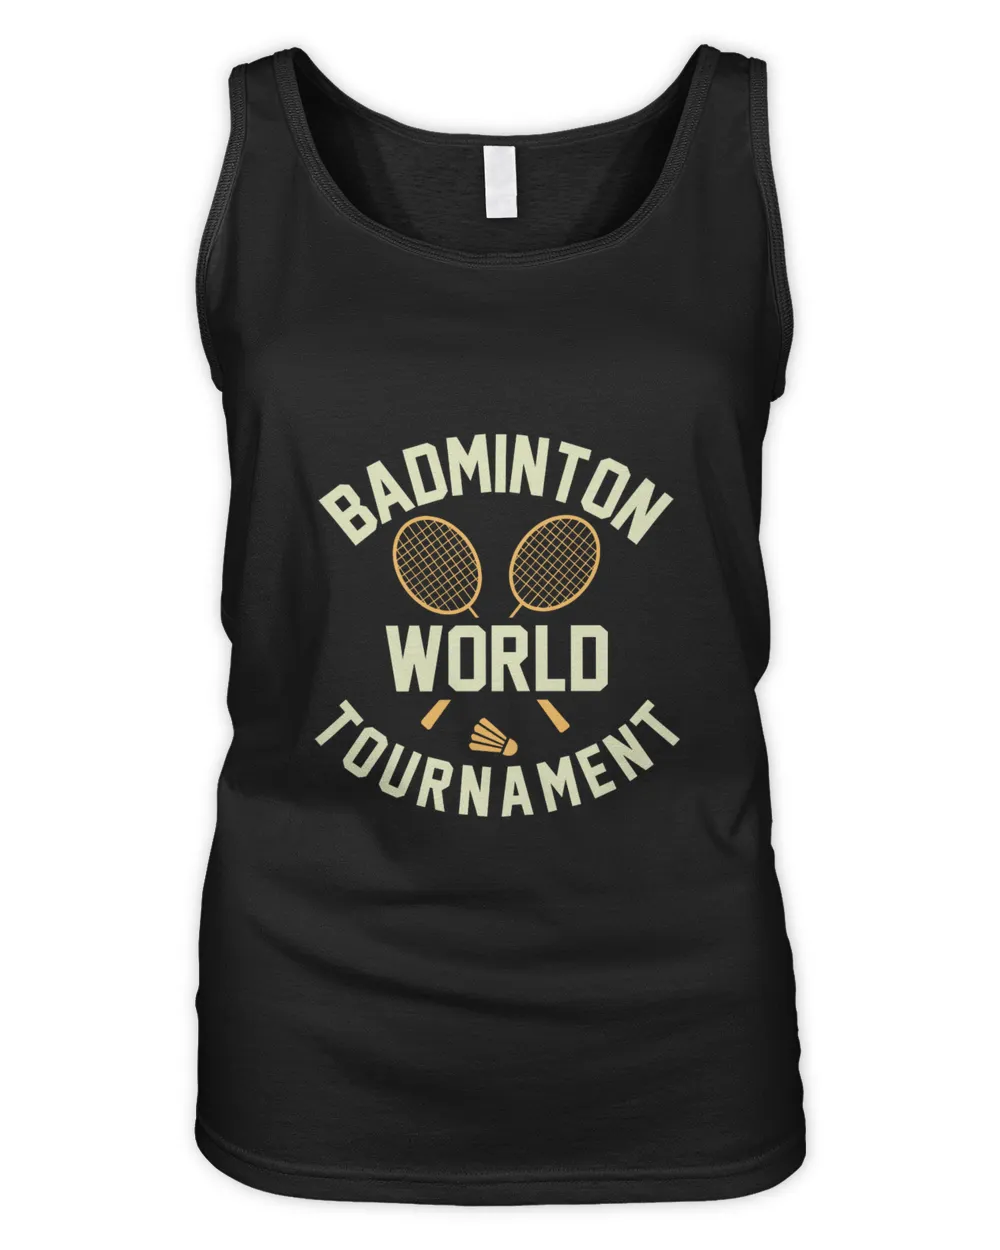 Badminton Shirt, Badminton Shirt,Badminton T-shirt,Funny Badminton Shirt, Badminton Gift,Sport Shirt